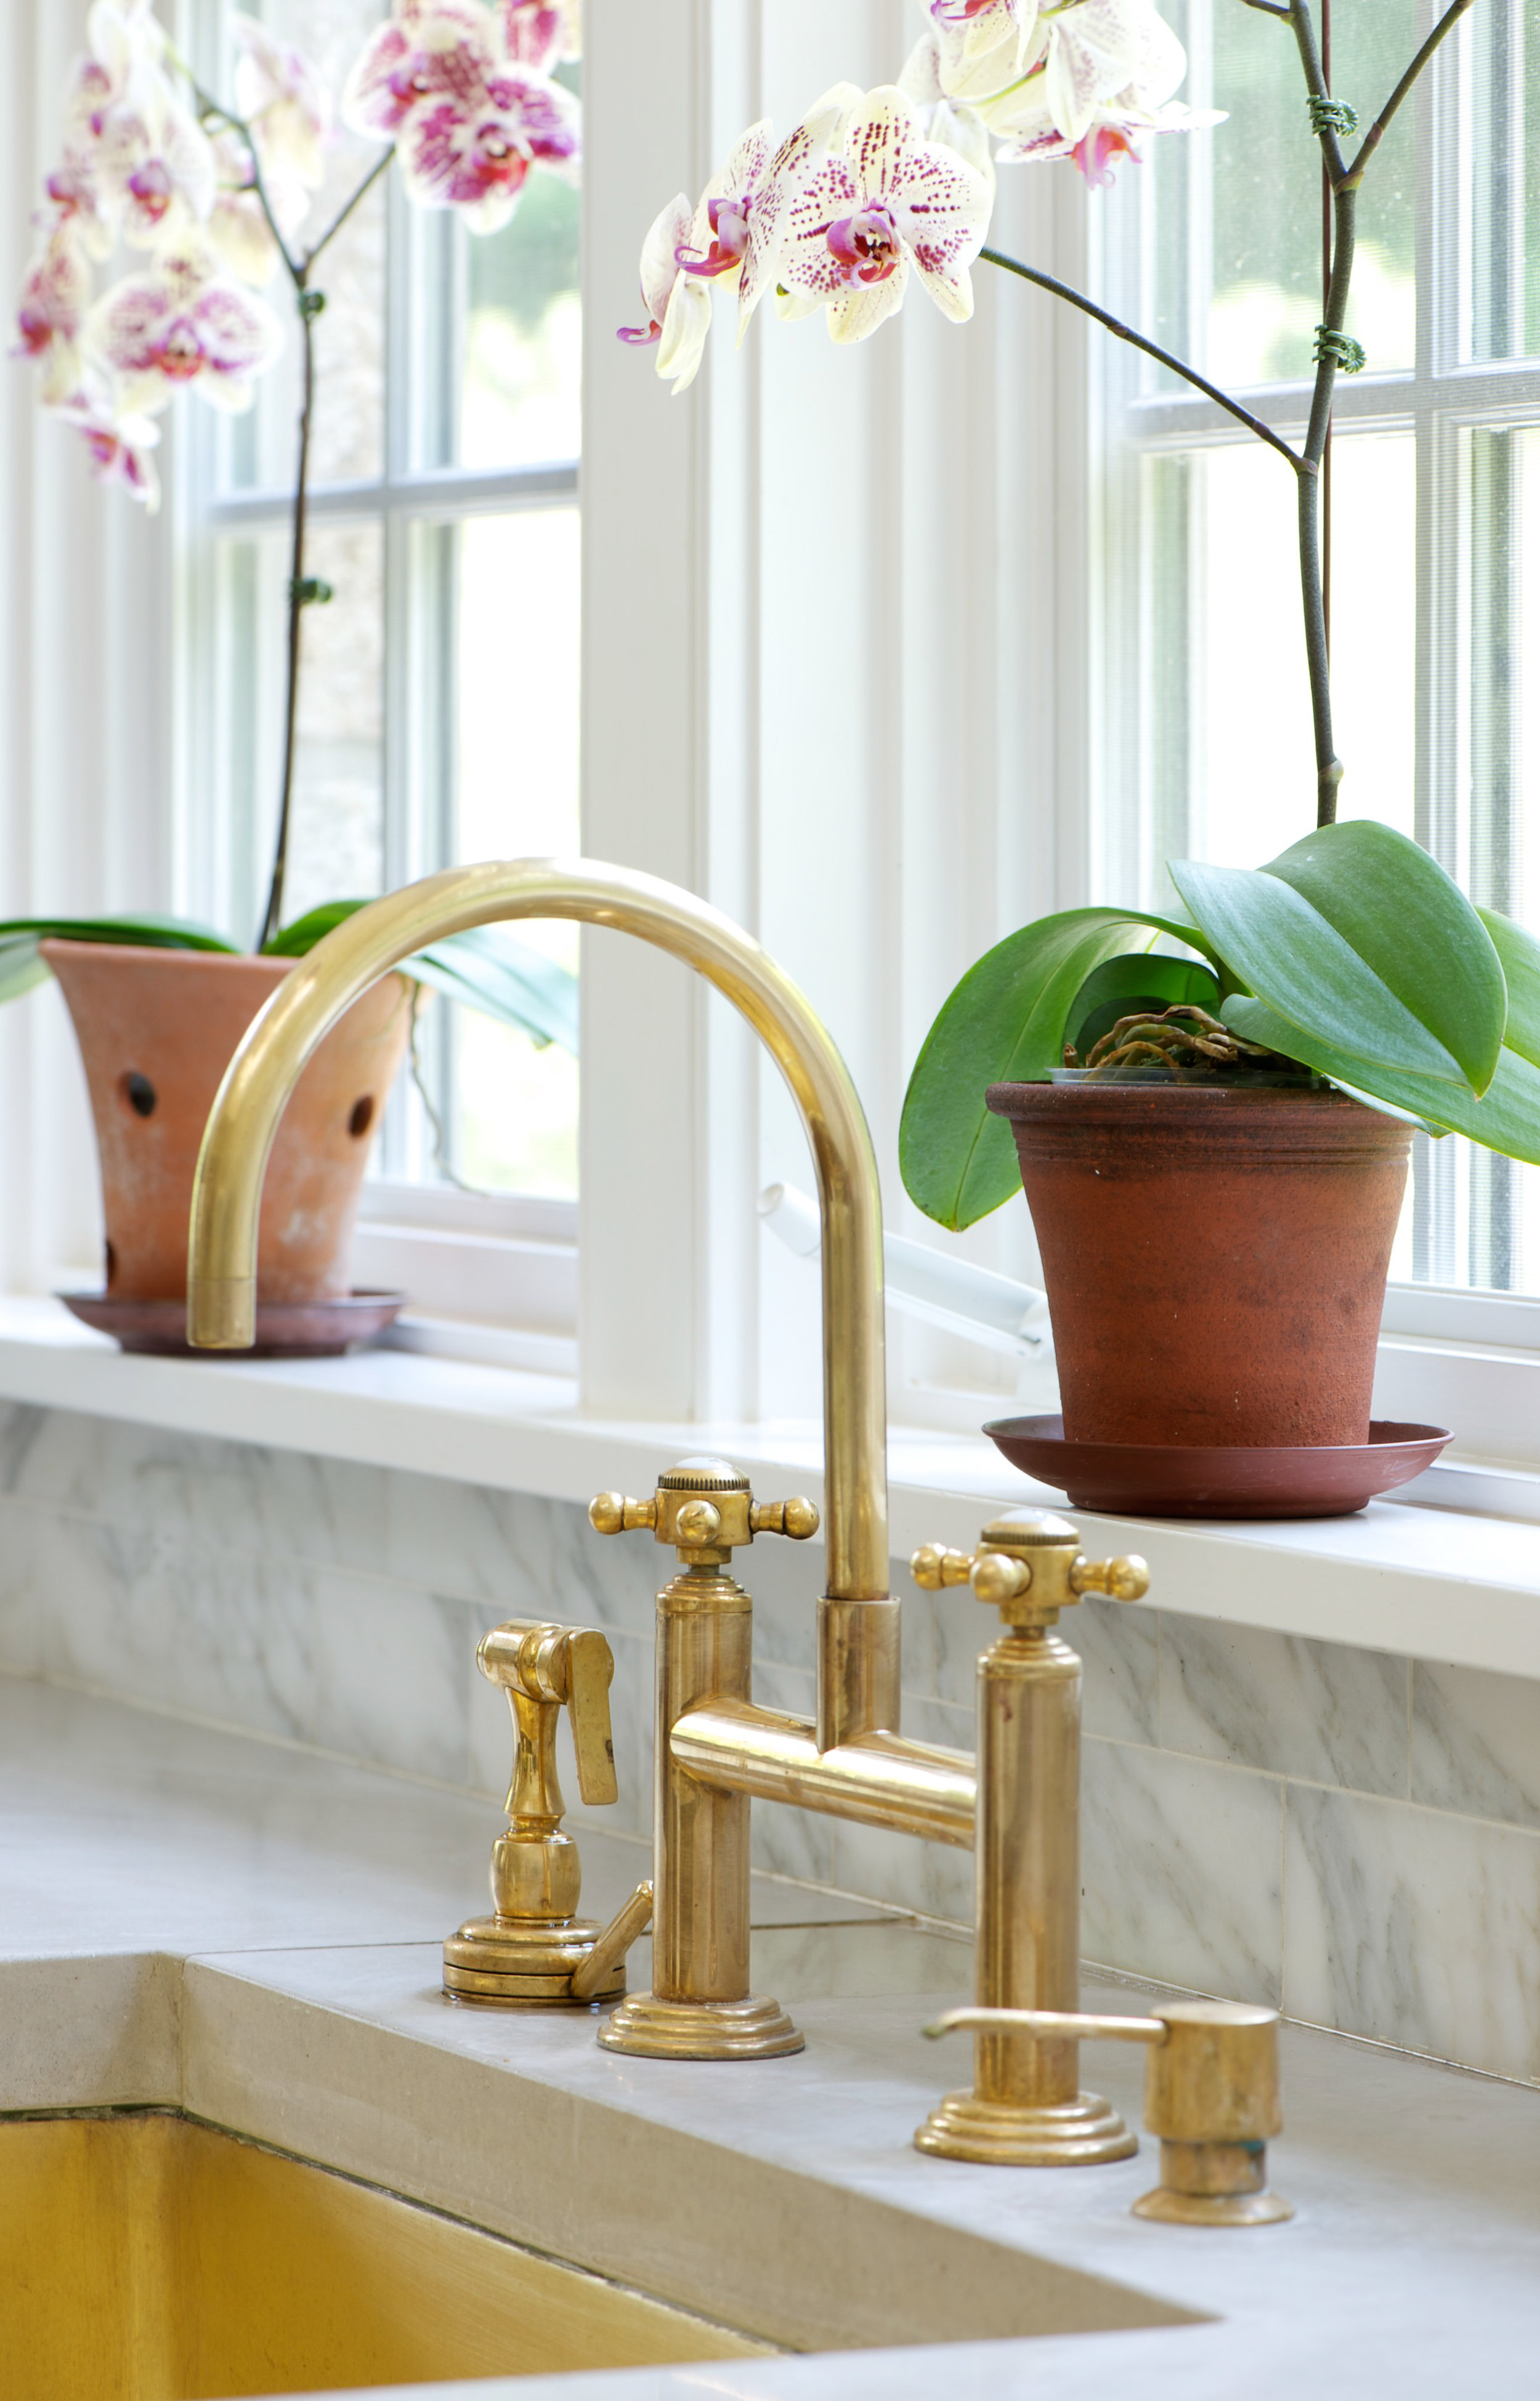 Plant-ledge-faucet-details